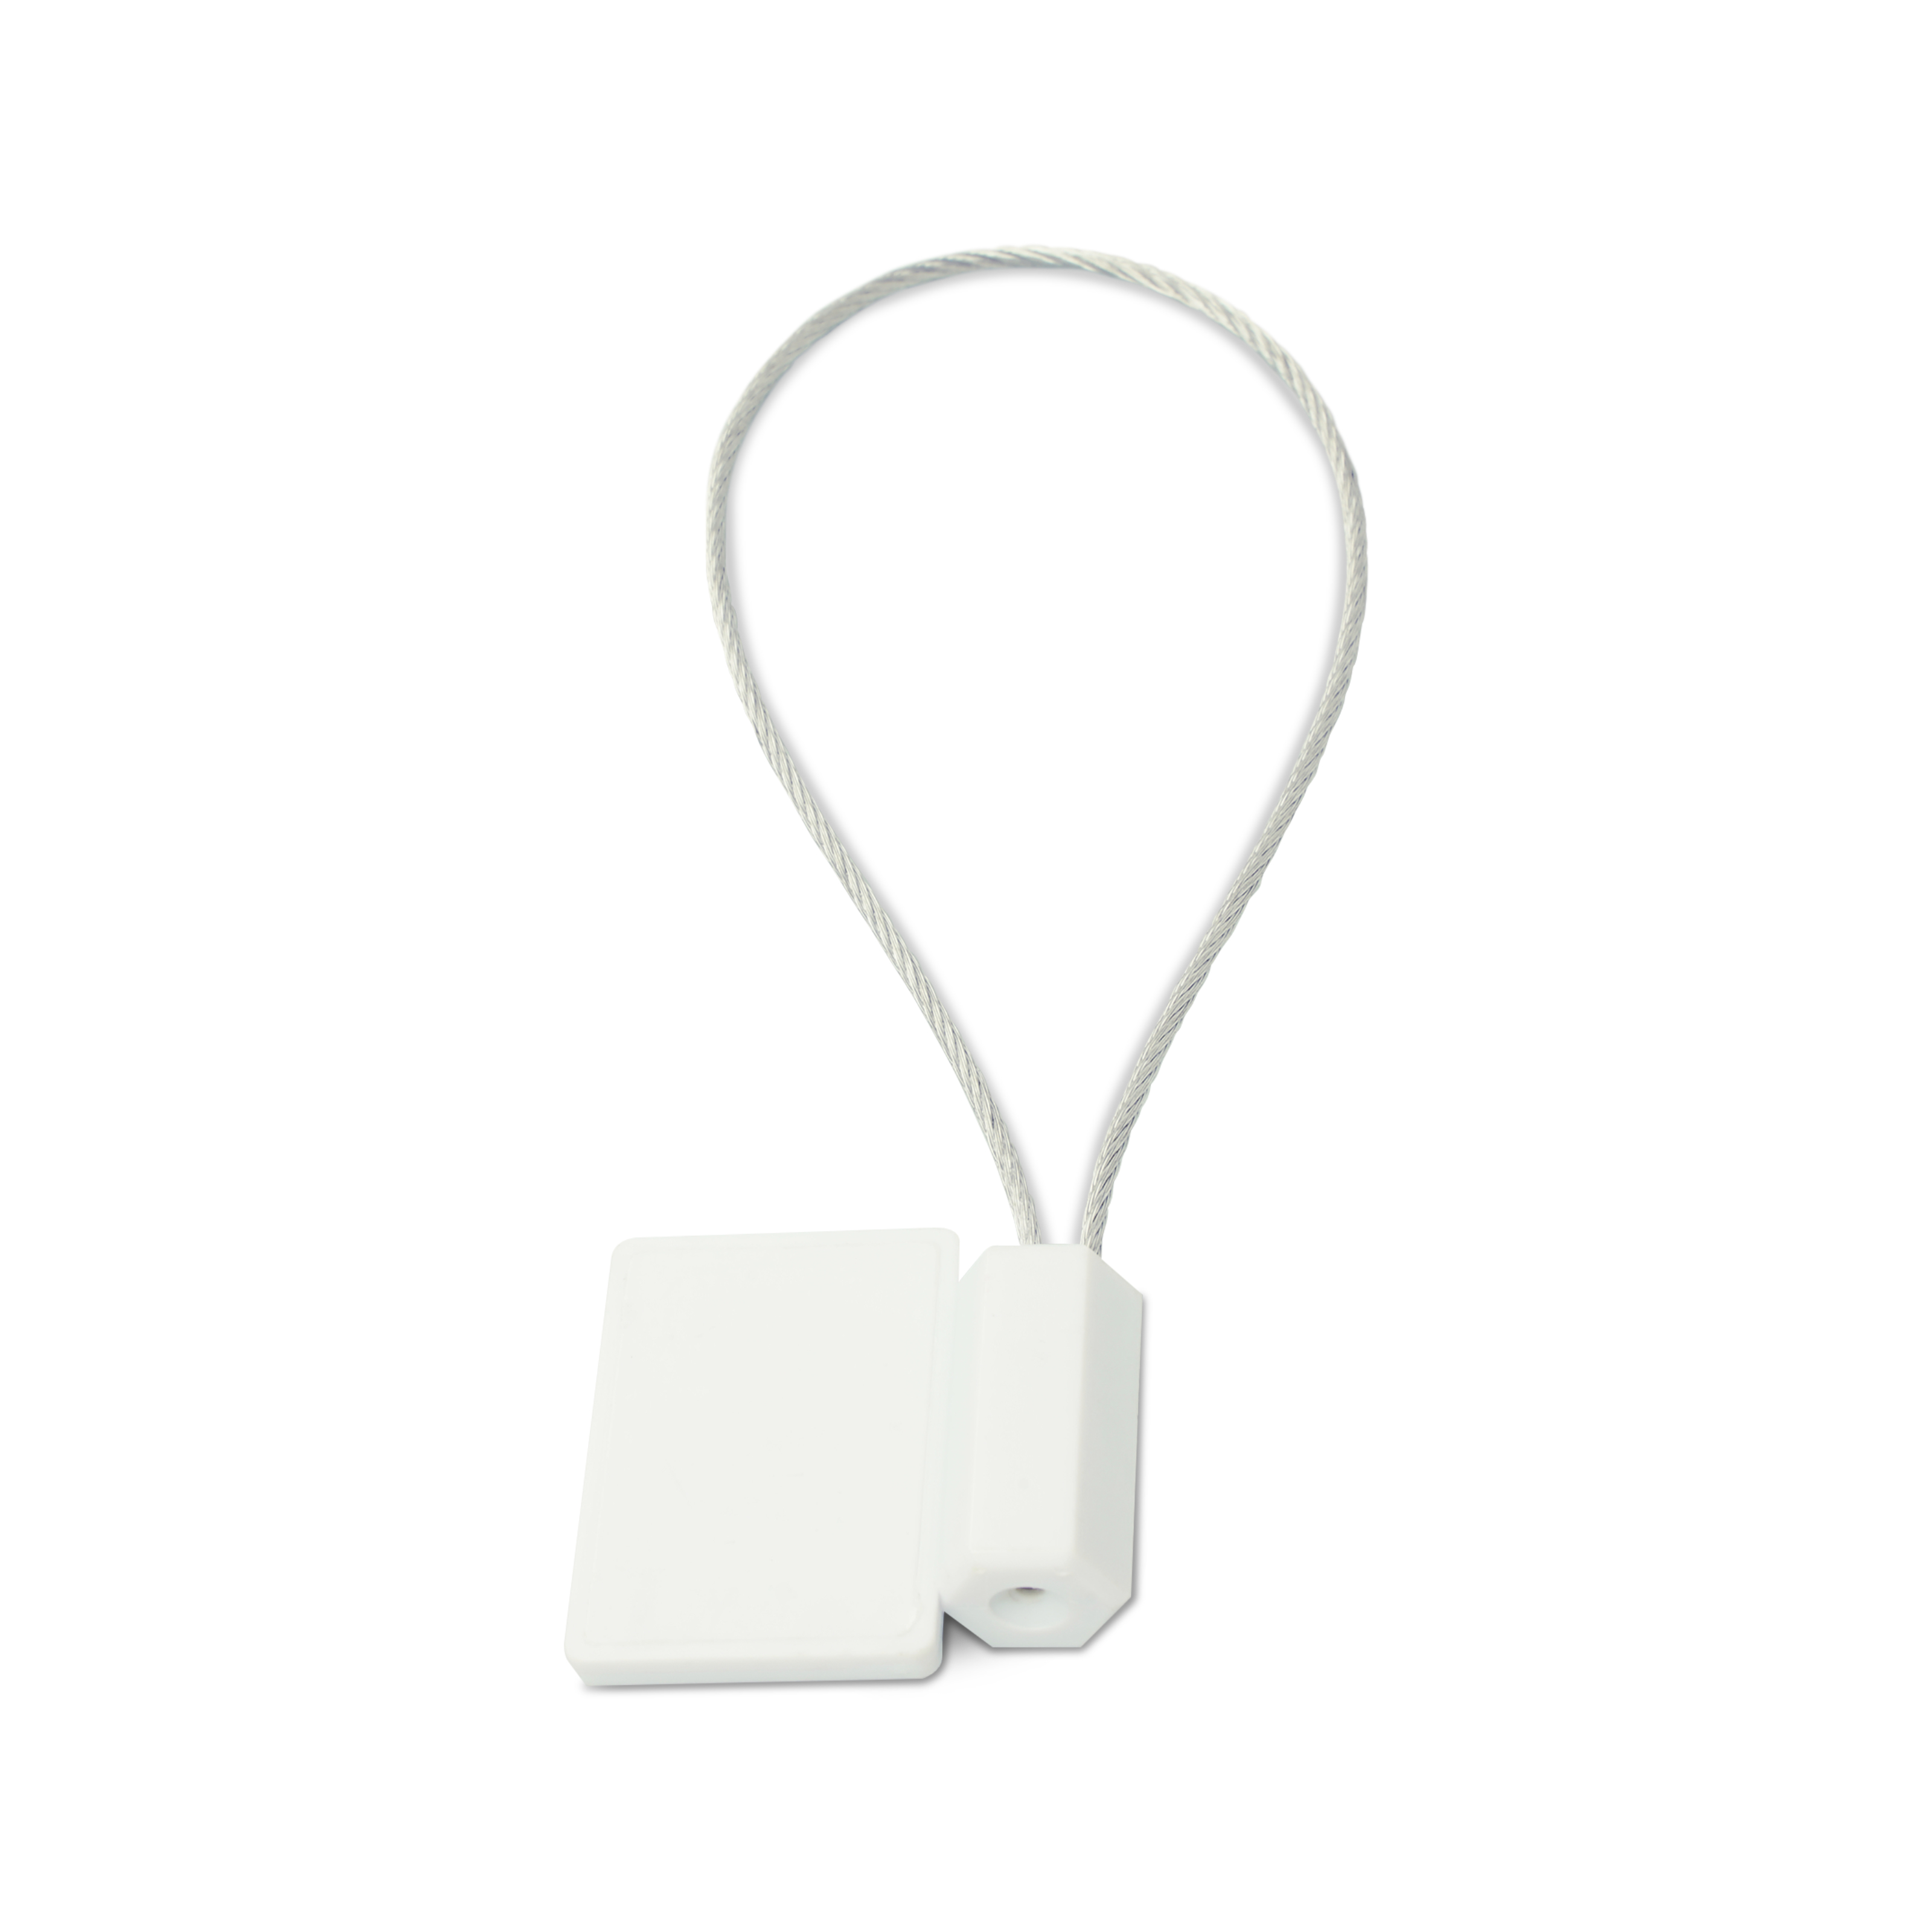 Liegende NFC Plombe mit Stahlschlaufe aus ABS in weiß